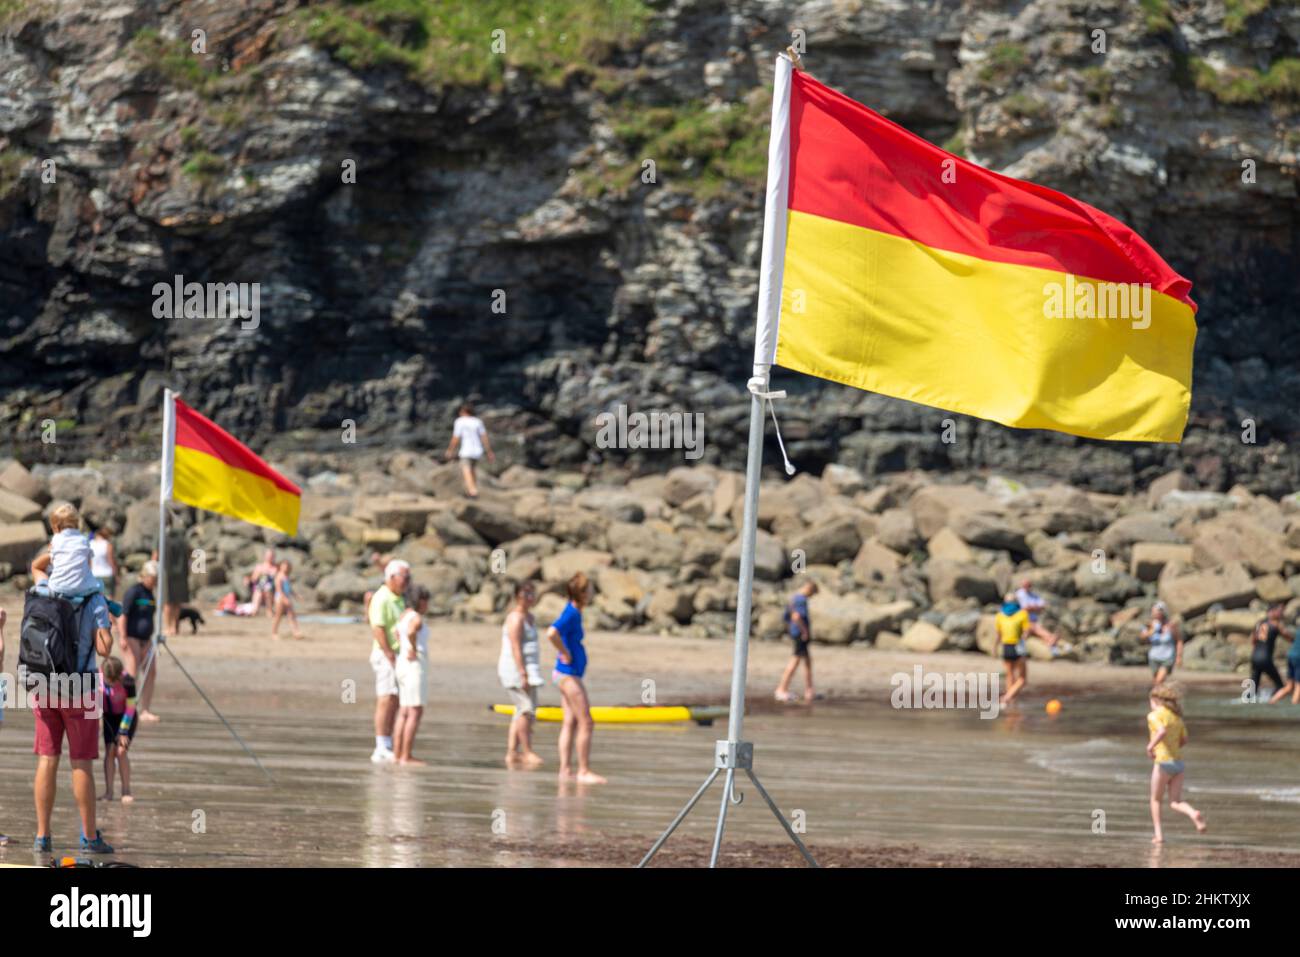 St.Agnes,Cornovaglia,Inghilterra,UK-Luglio 22: Una bandiera di sicurezza del mare, eretta su un treppiede dai membri del RNLI, mostra i colori che indicano l'area di nuoto consigliata Foto Stock